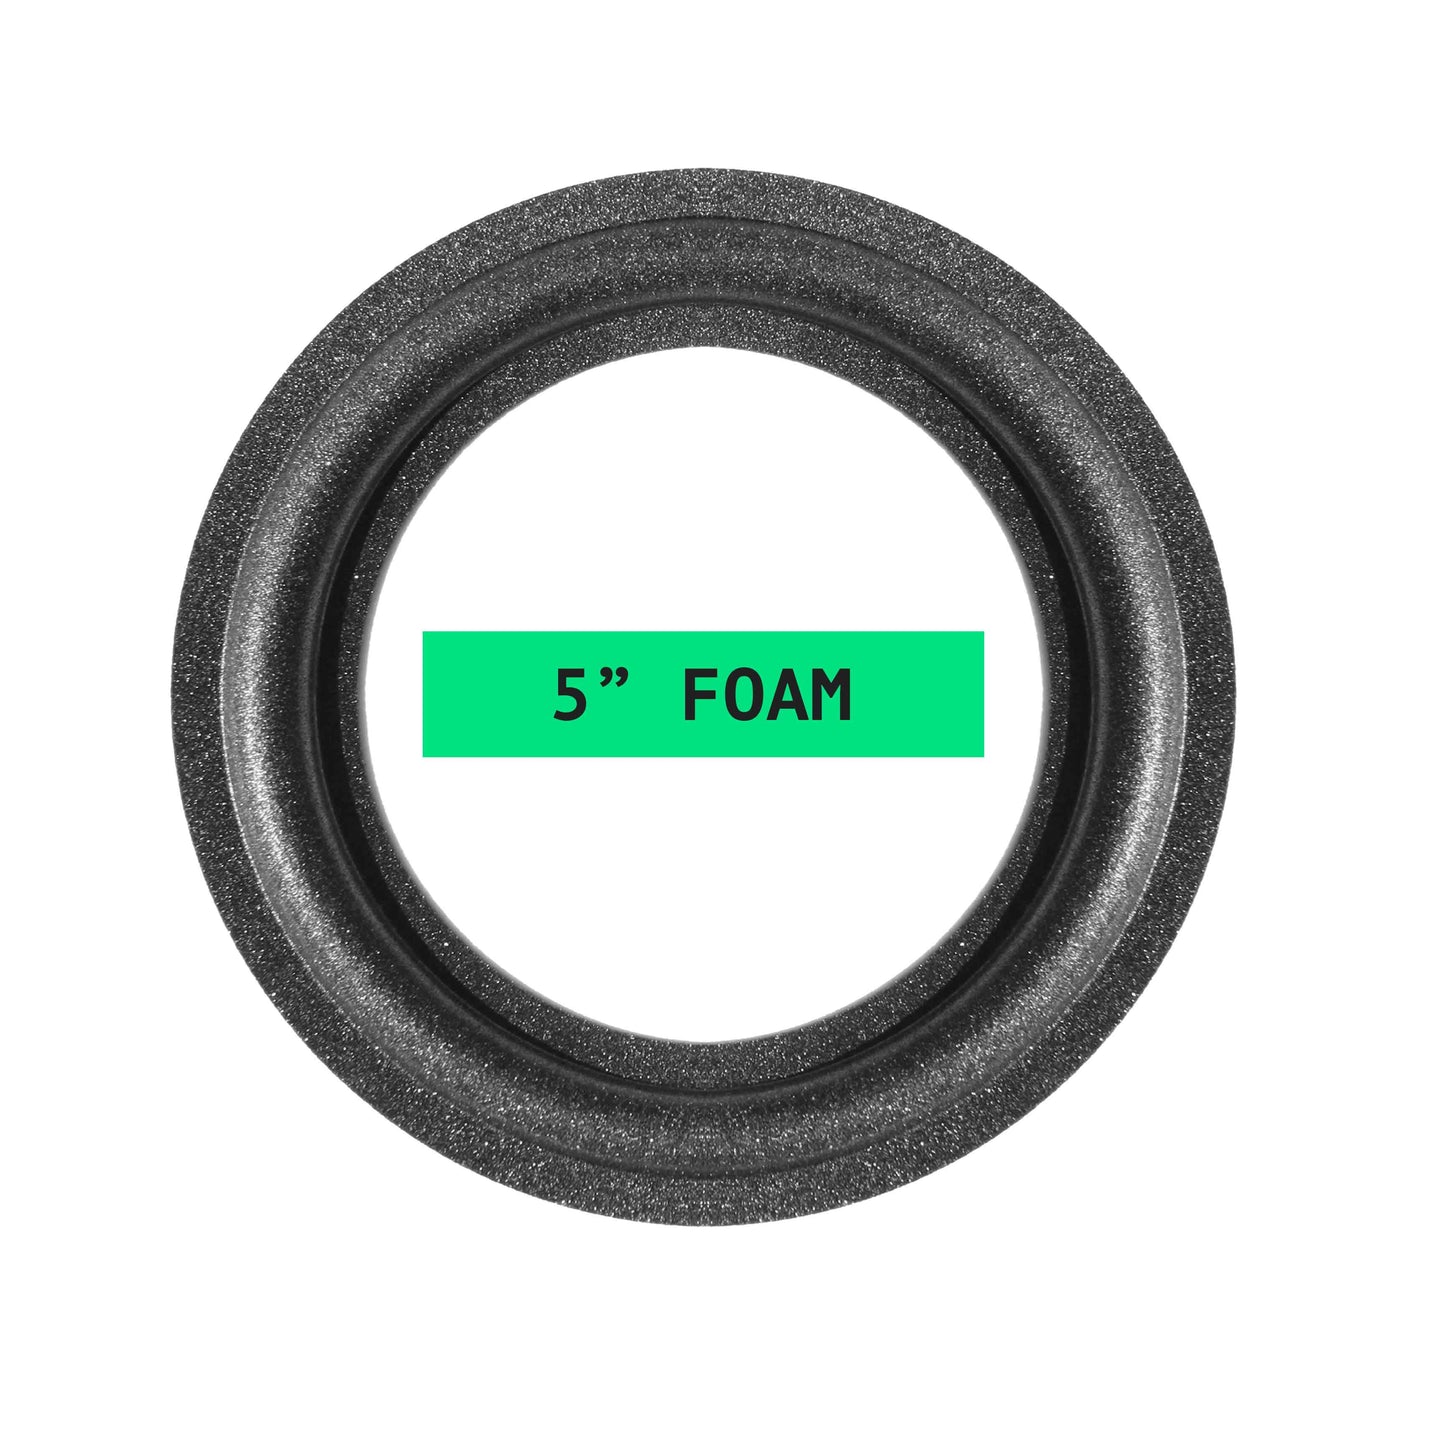 5" Foam Repair Kit - OD:125MM ID:80MM